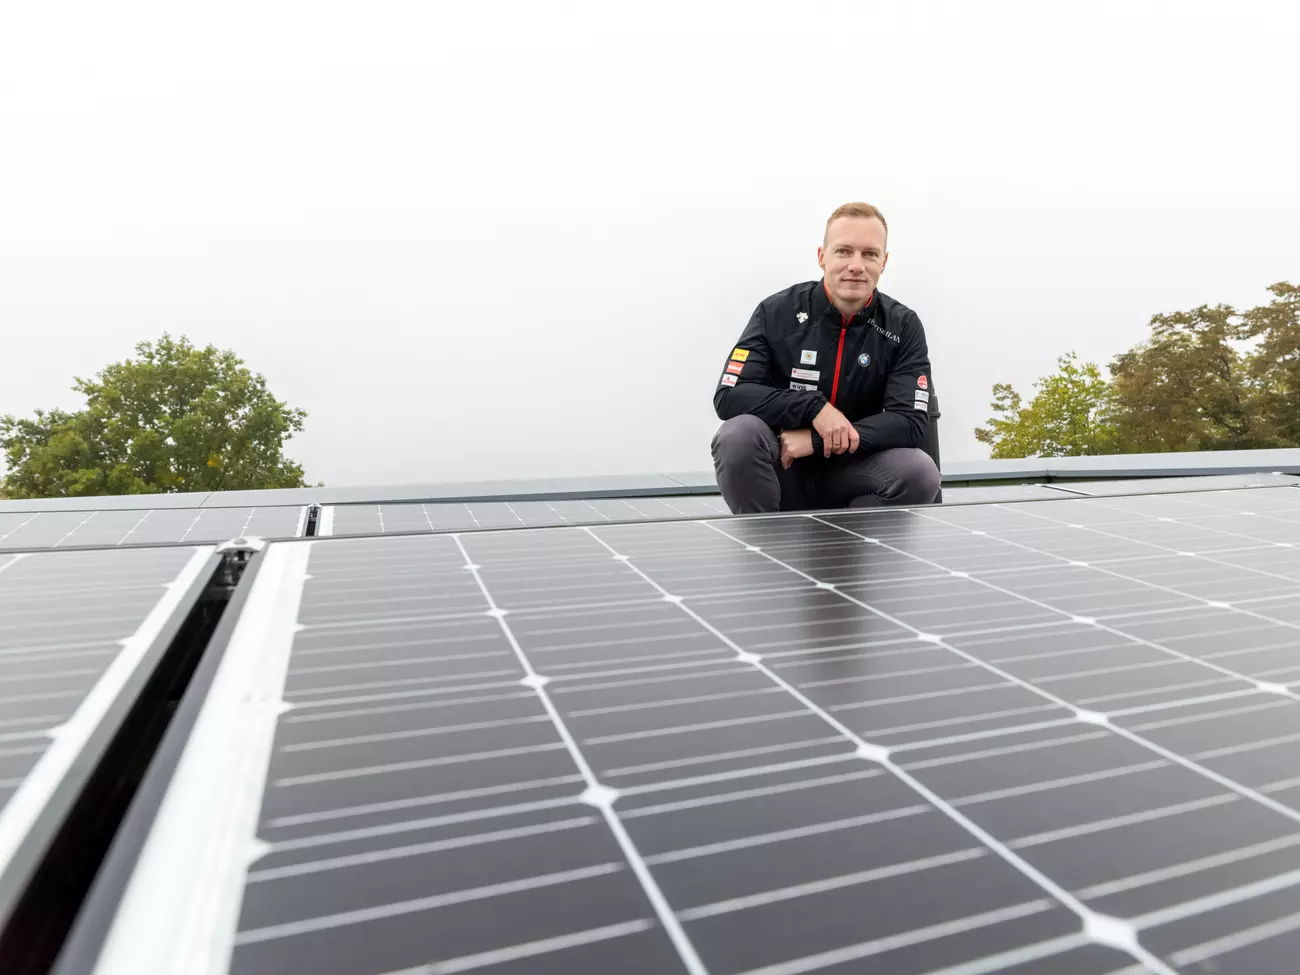 Bobfahrer Francesco Friedrich auf Dach mit Solarmodulen